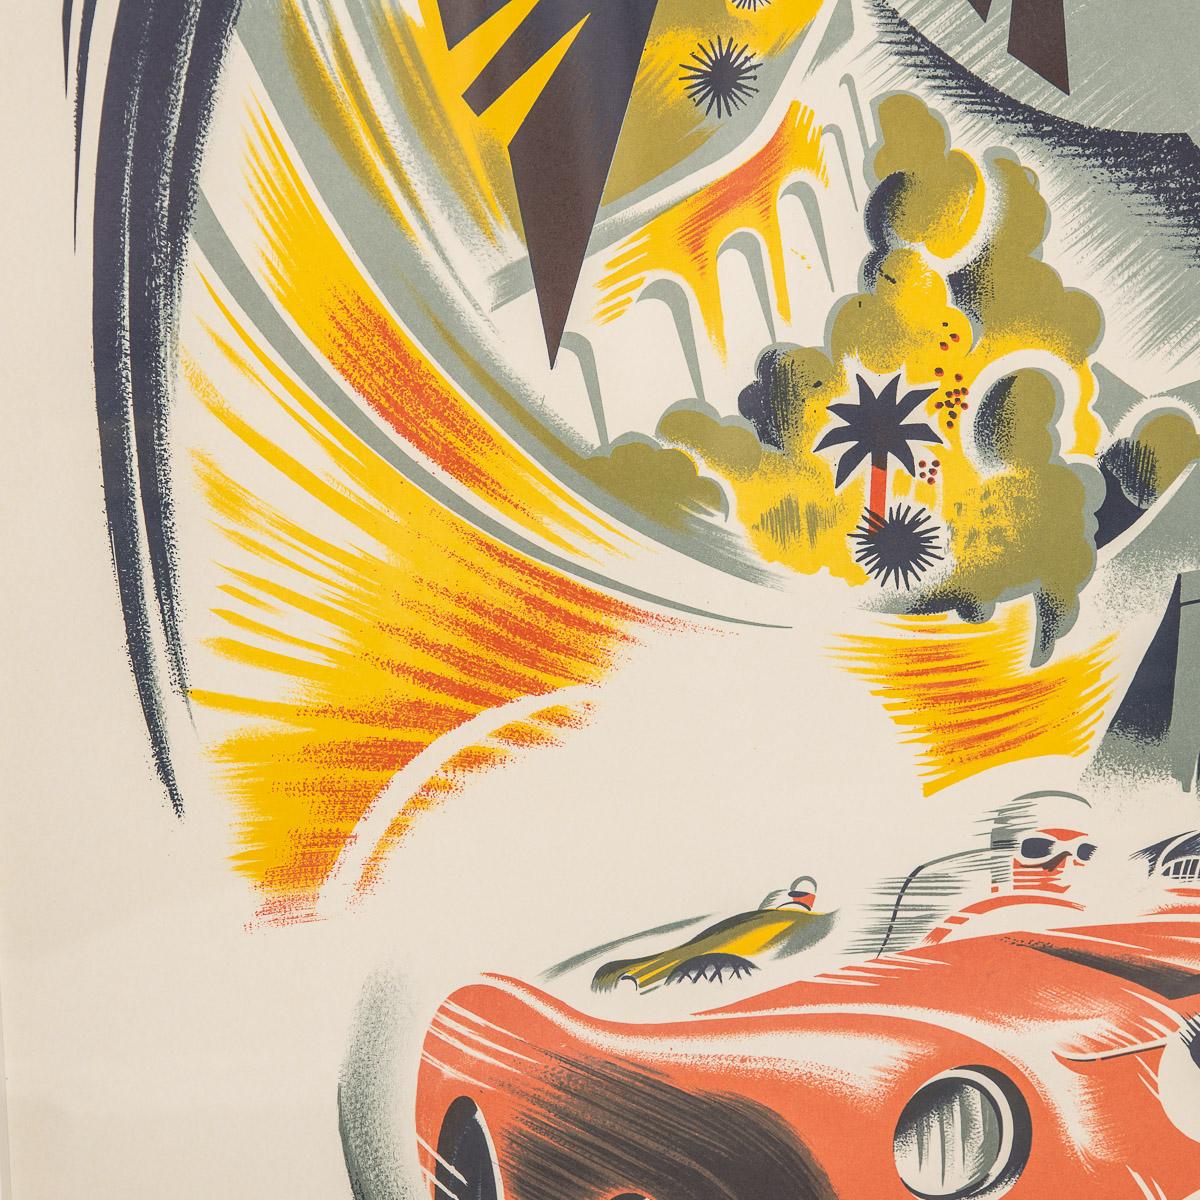 20thC Reprint Of Monaco 1952 Grandprix Poster, B. Minna c.1960 2